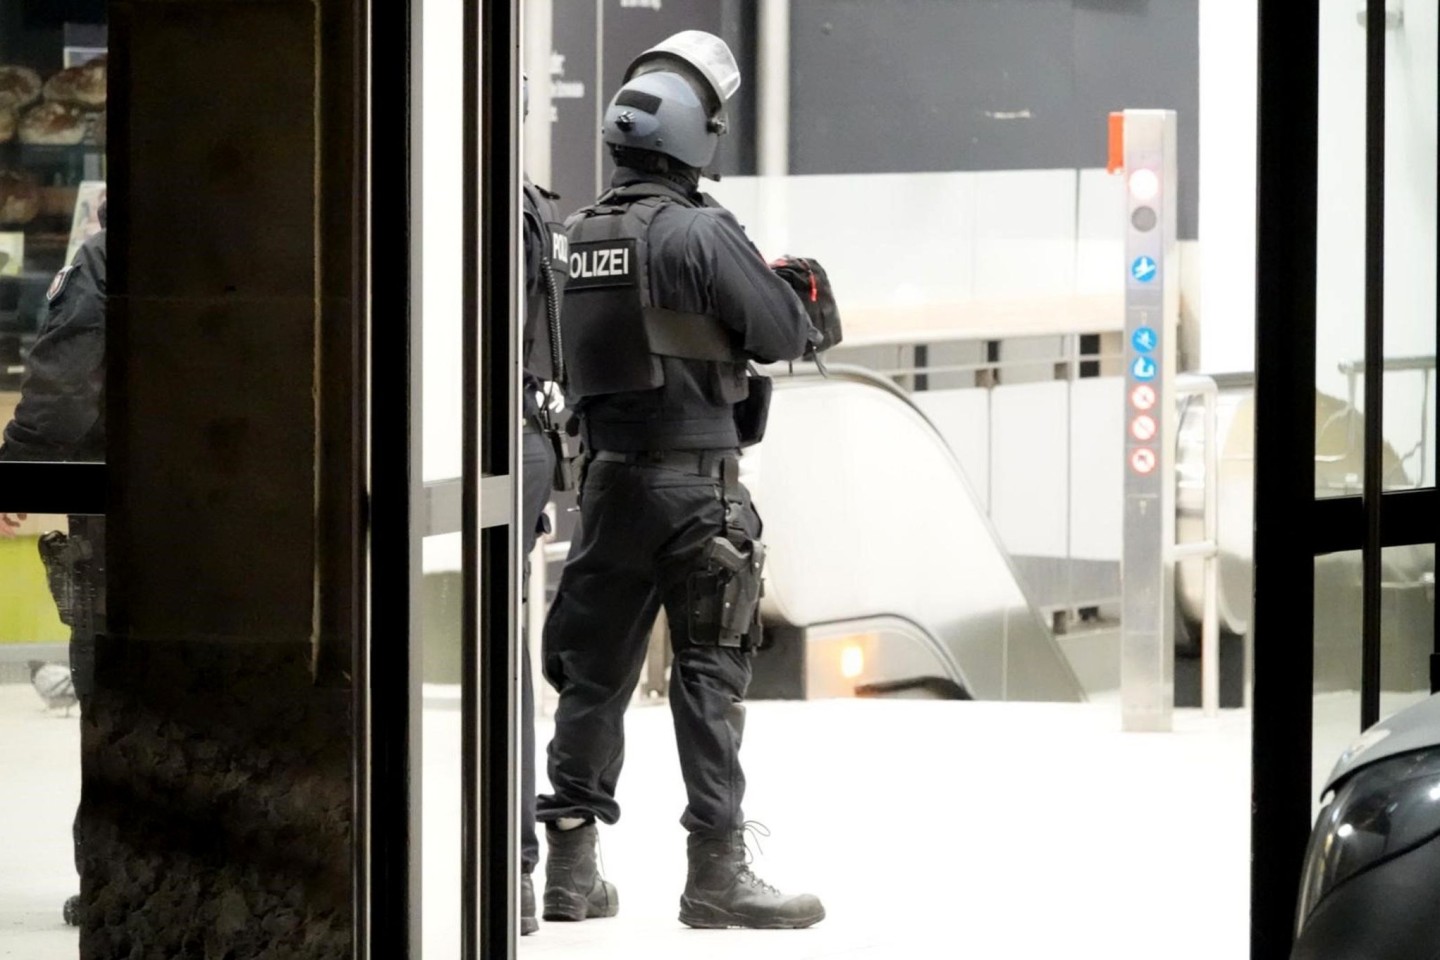 Einsatzkräfte der Polizei stehen im Bielefelder Hauptbahnhof.